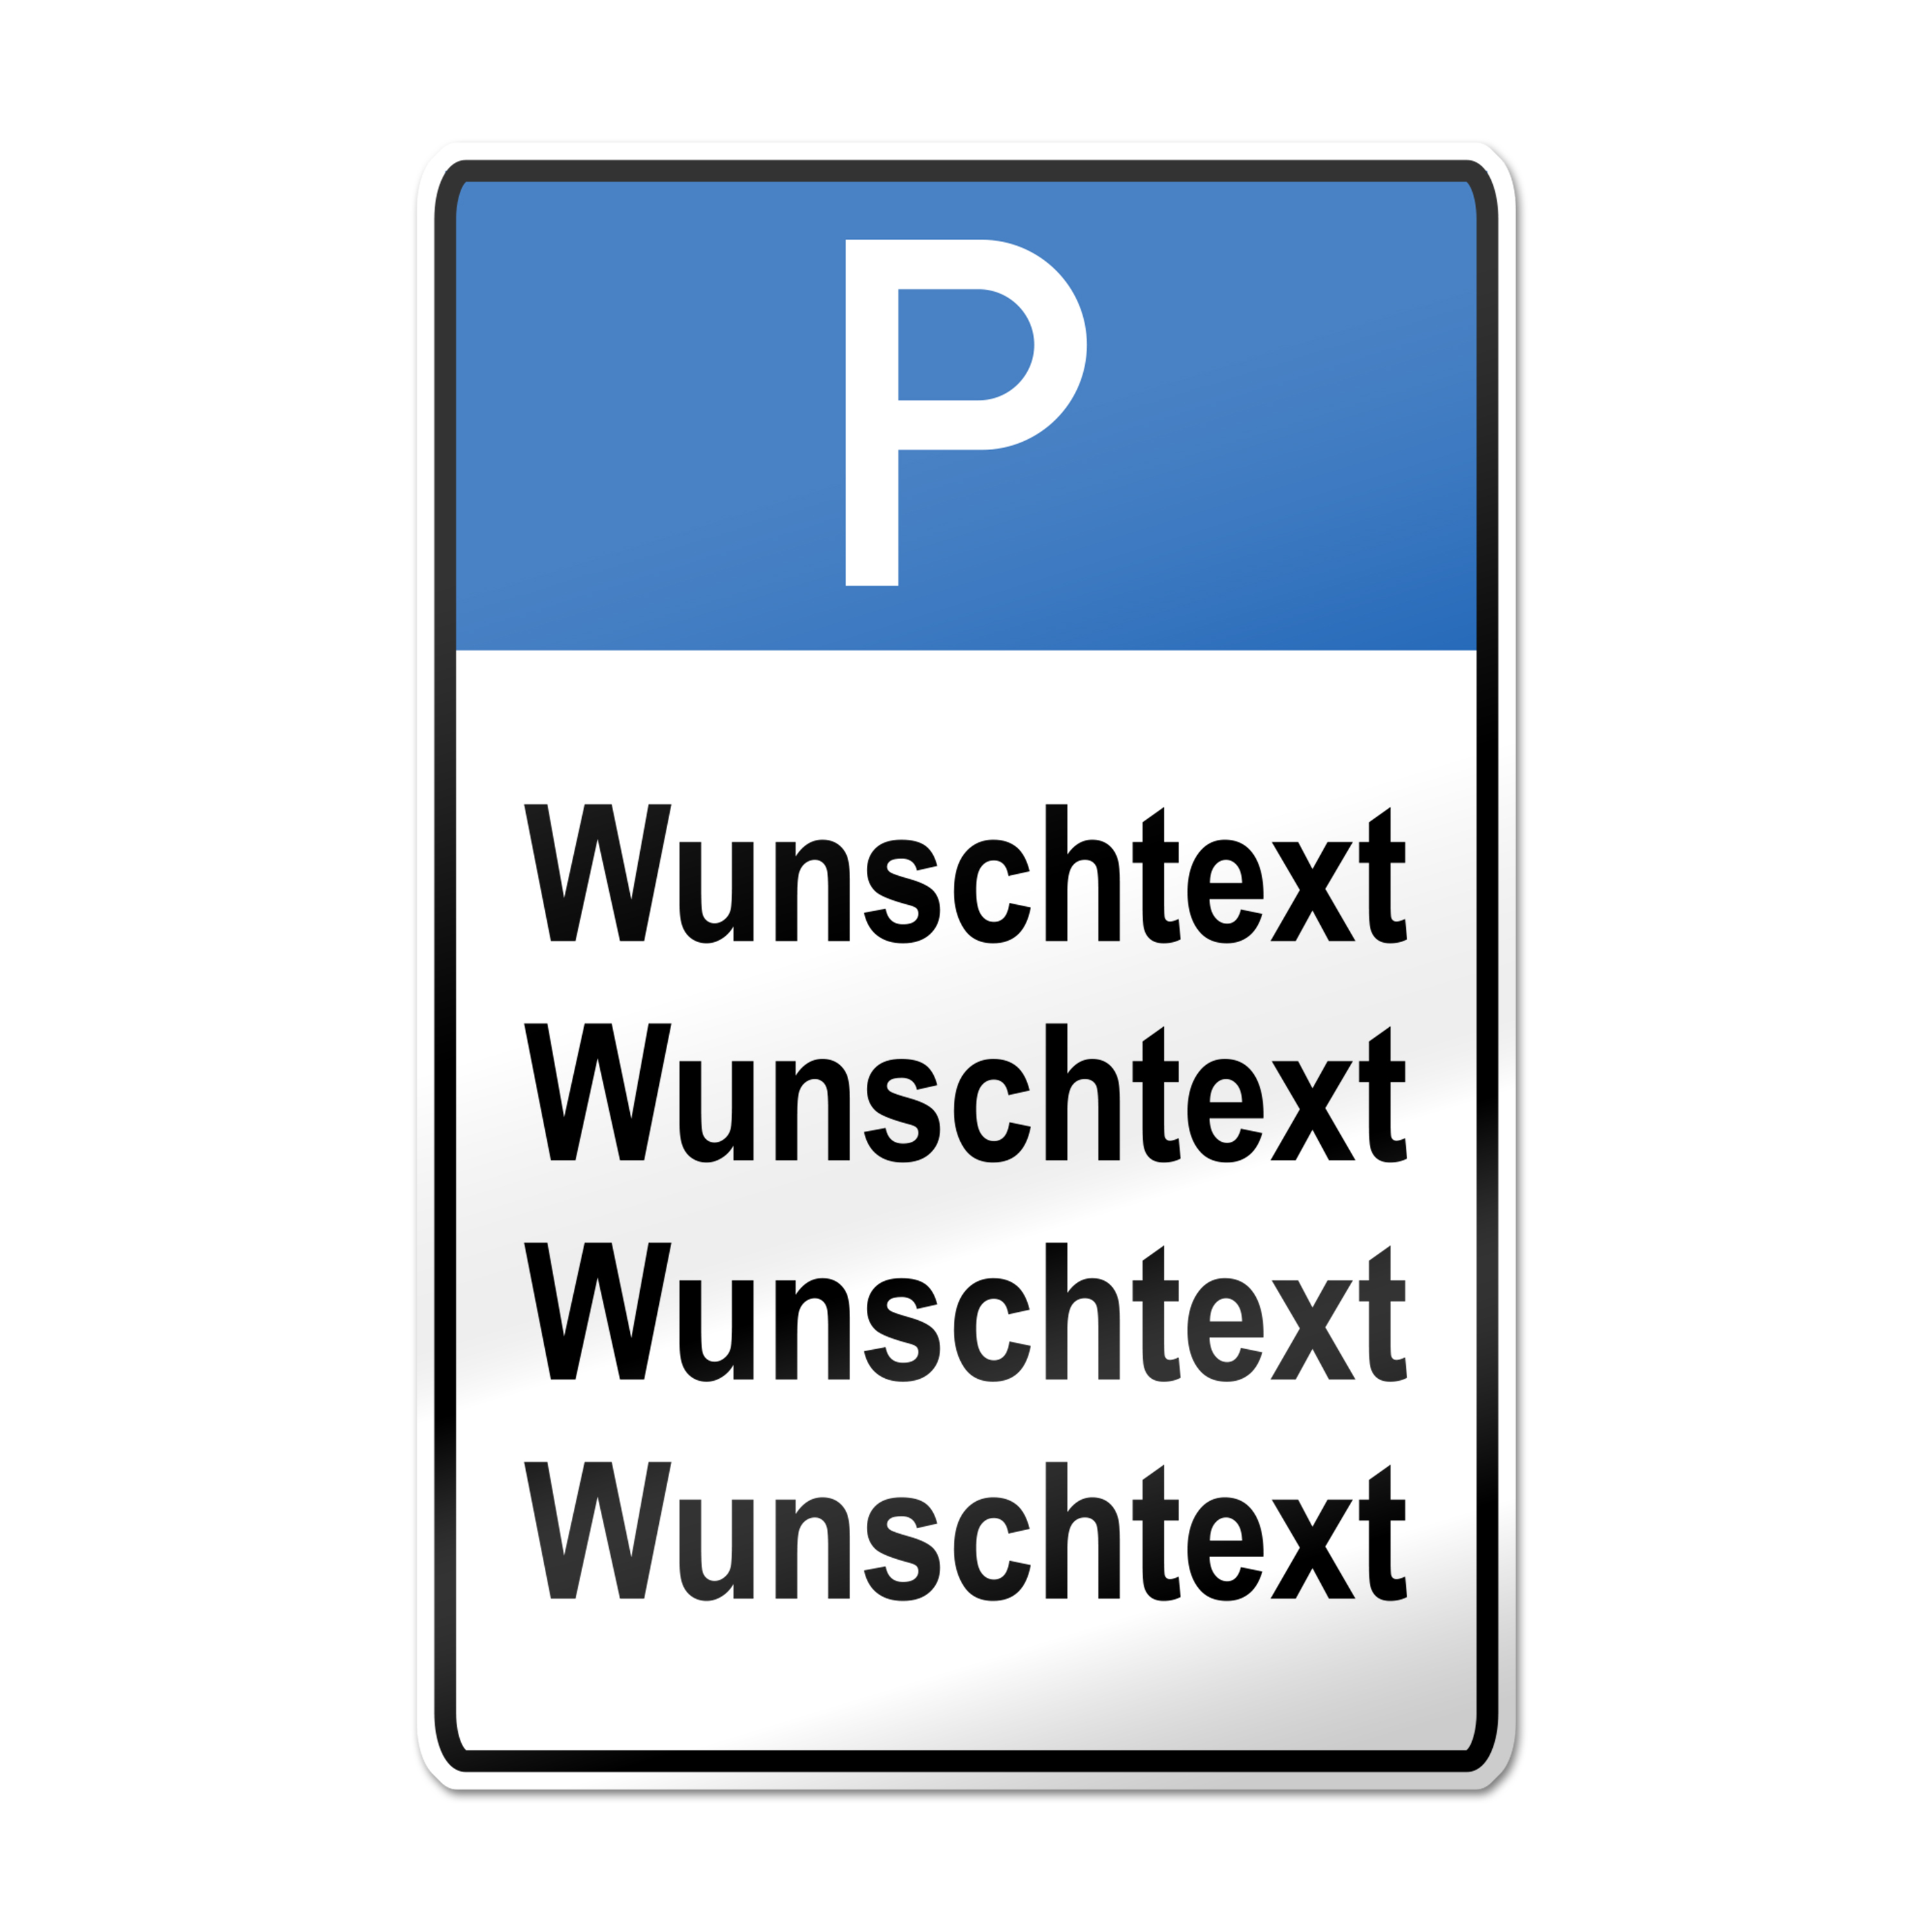 Parkplatzschild zum Selbstgestalten Text und Motiv